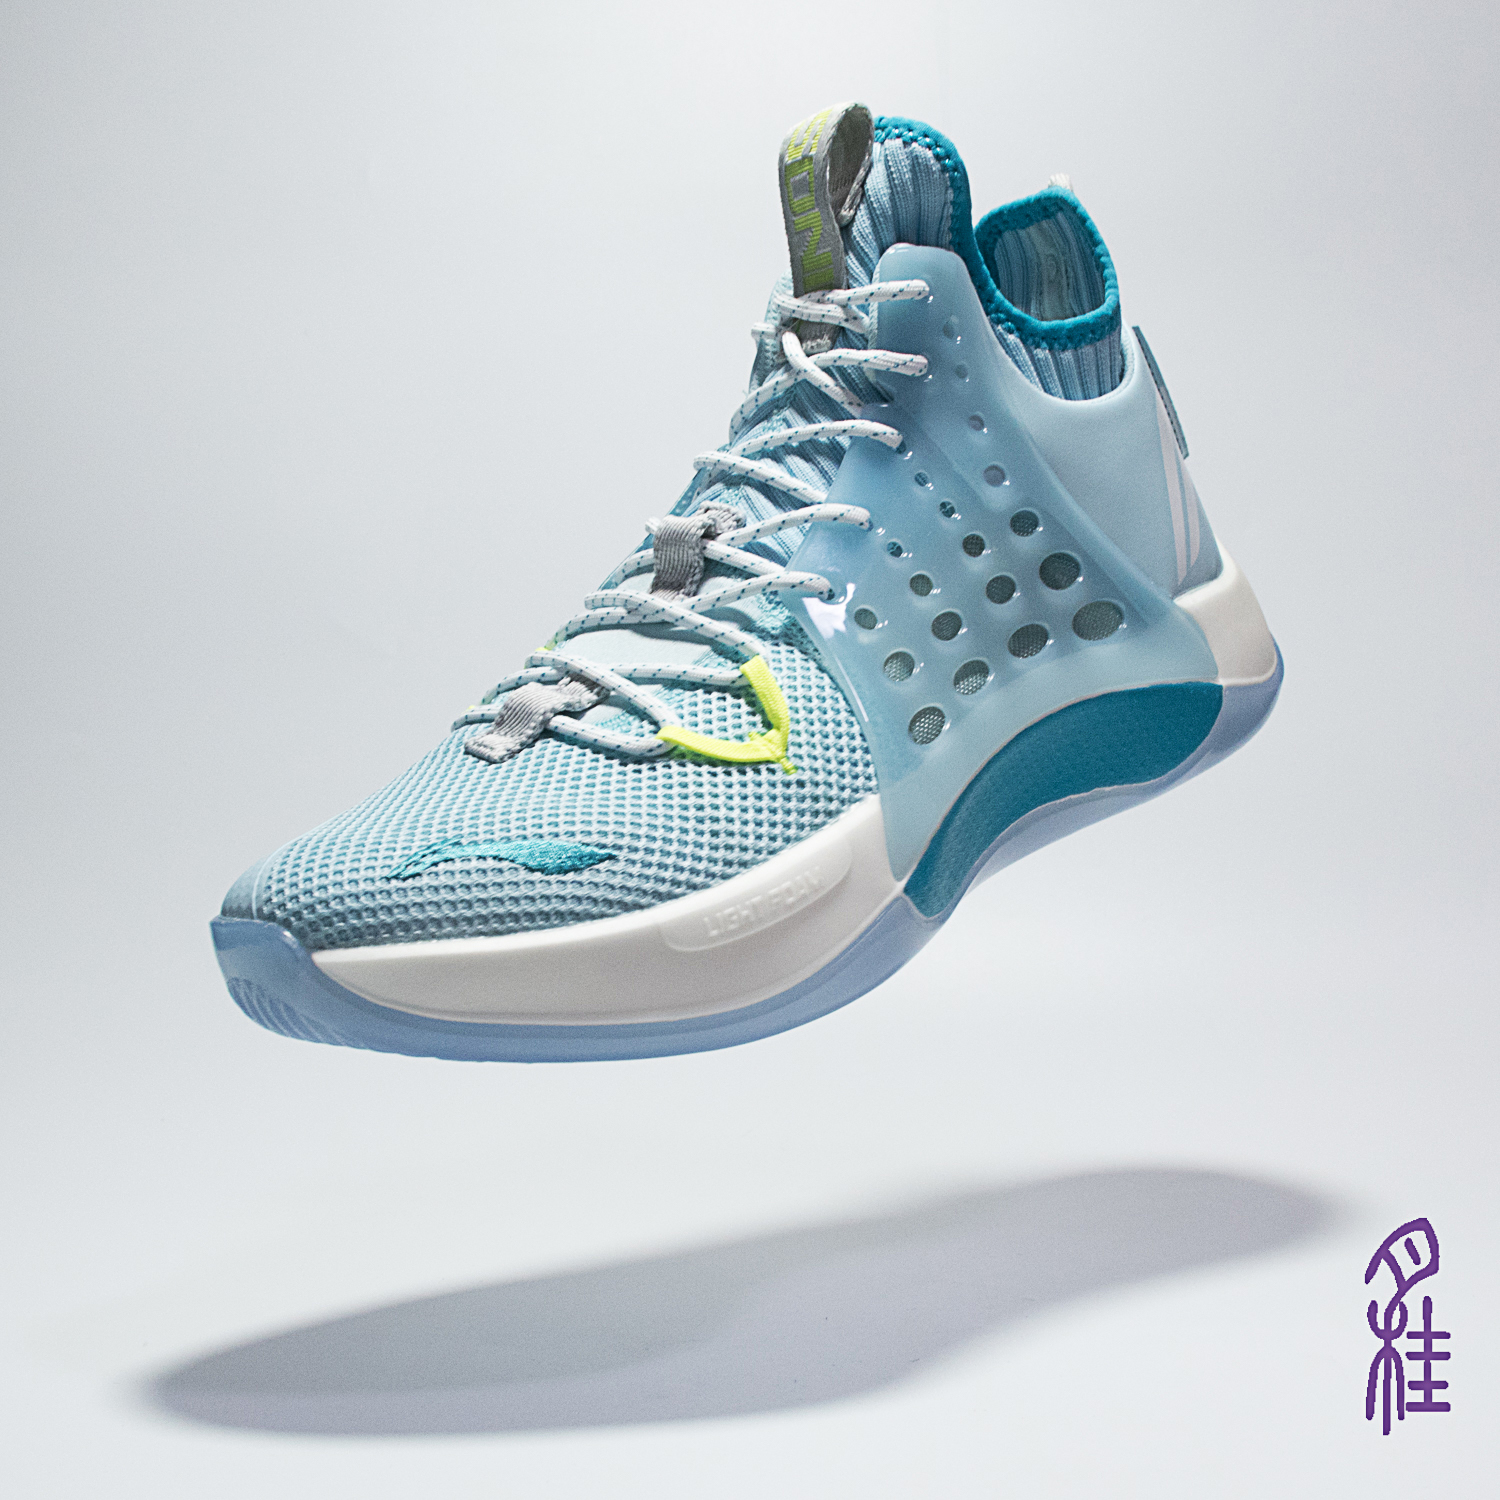 李宁音速7赞助CBA2019新款FOAM LIGHT缓震科技篮球鞋 ABAP019 029